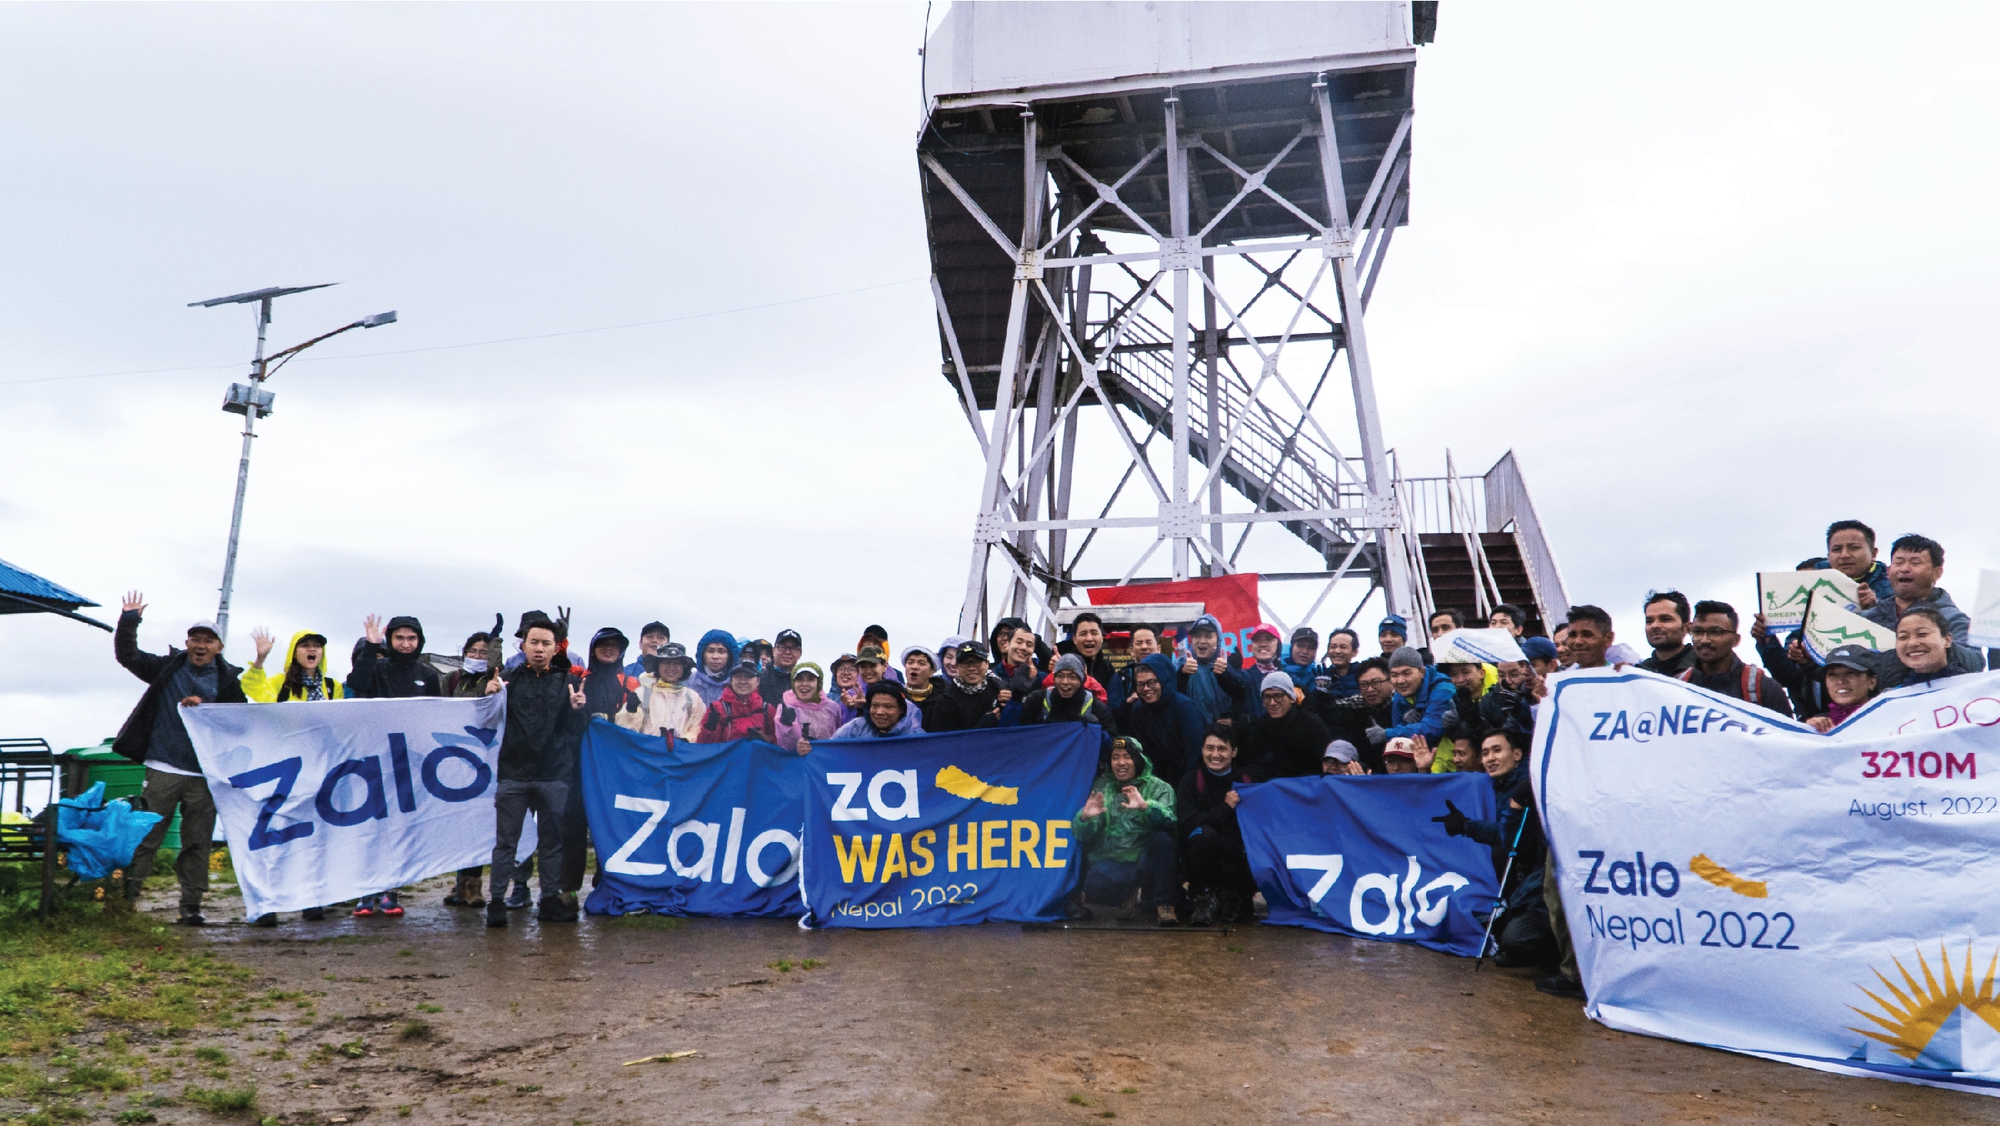 Zalo Group chinh phục đỉnh Poon Hill mừng sinh nhật - Ảnh 1.